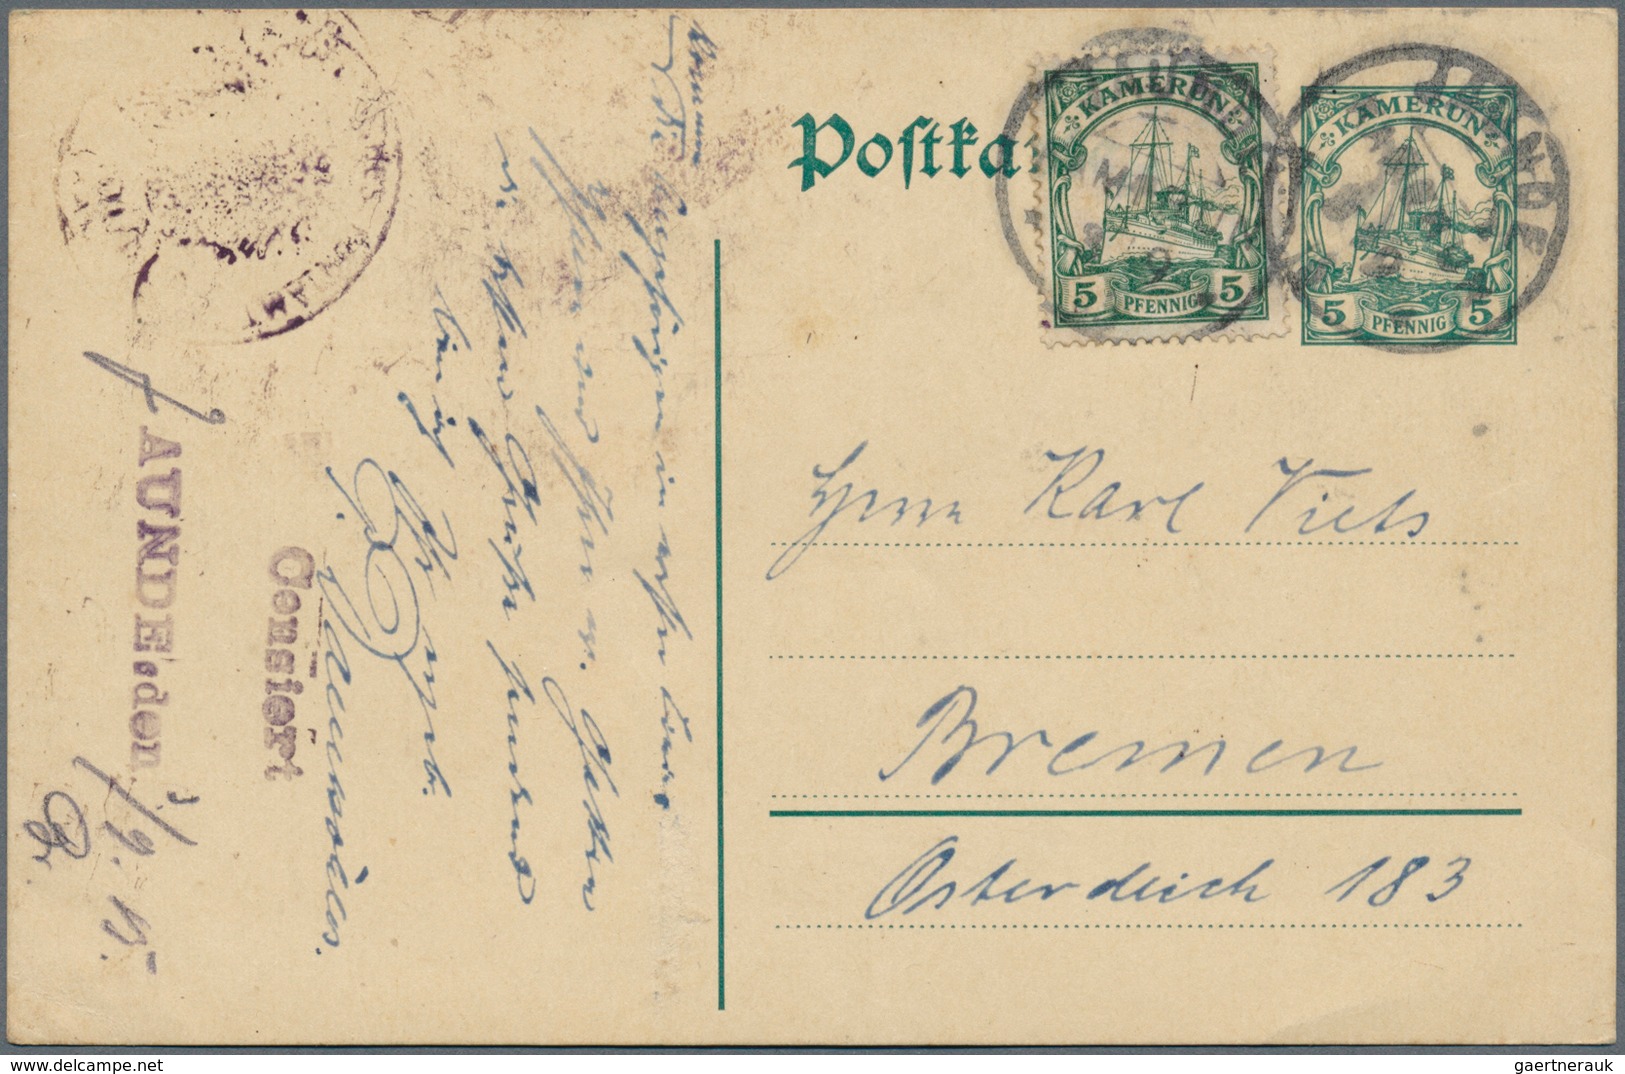 Deutsche Kolonien - Kamerun - Besonderheiten: 1915 (3.9.), Violetter Gummi-Typensatz-Stempel "Censie - Camerun